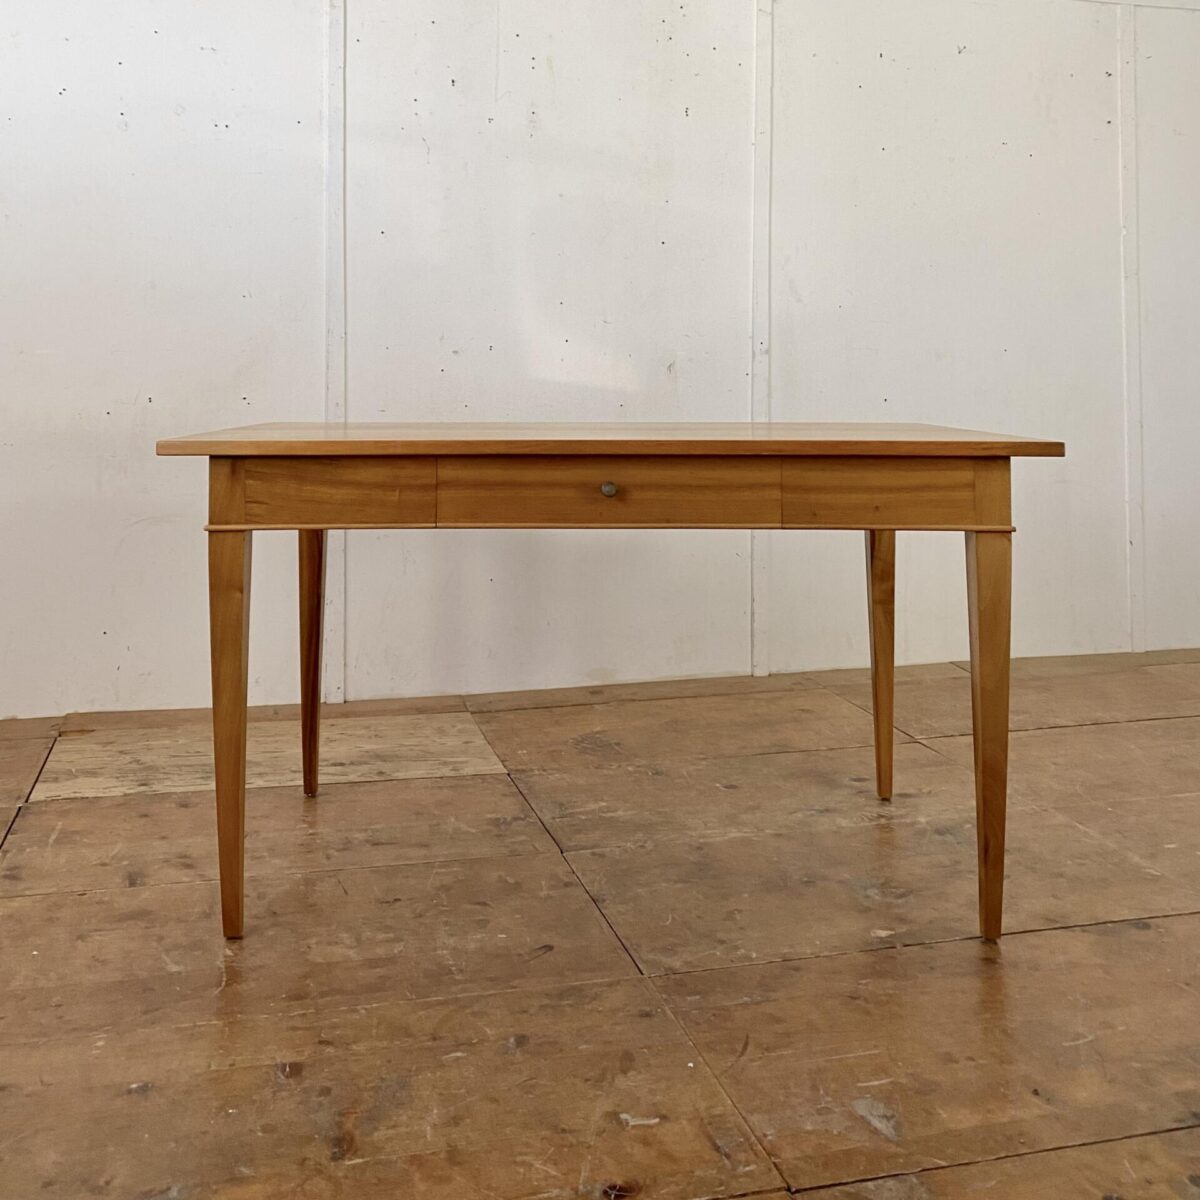 Deuxieme.shop Nussbaum Biedermeier Schreibtisch. 140x80cm Höhe 77cm. Der Tisch ist in gutem Original Zustand, mit ein paar kleinen Flecken. Als Esstisch finden angenehm 4 Personen daran Platz. 